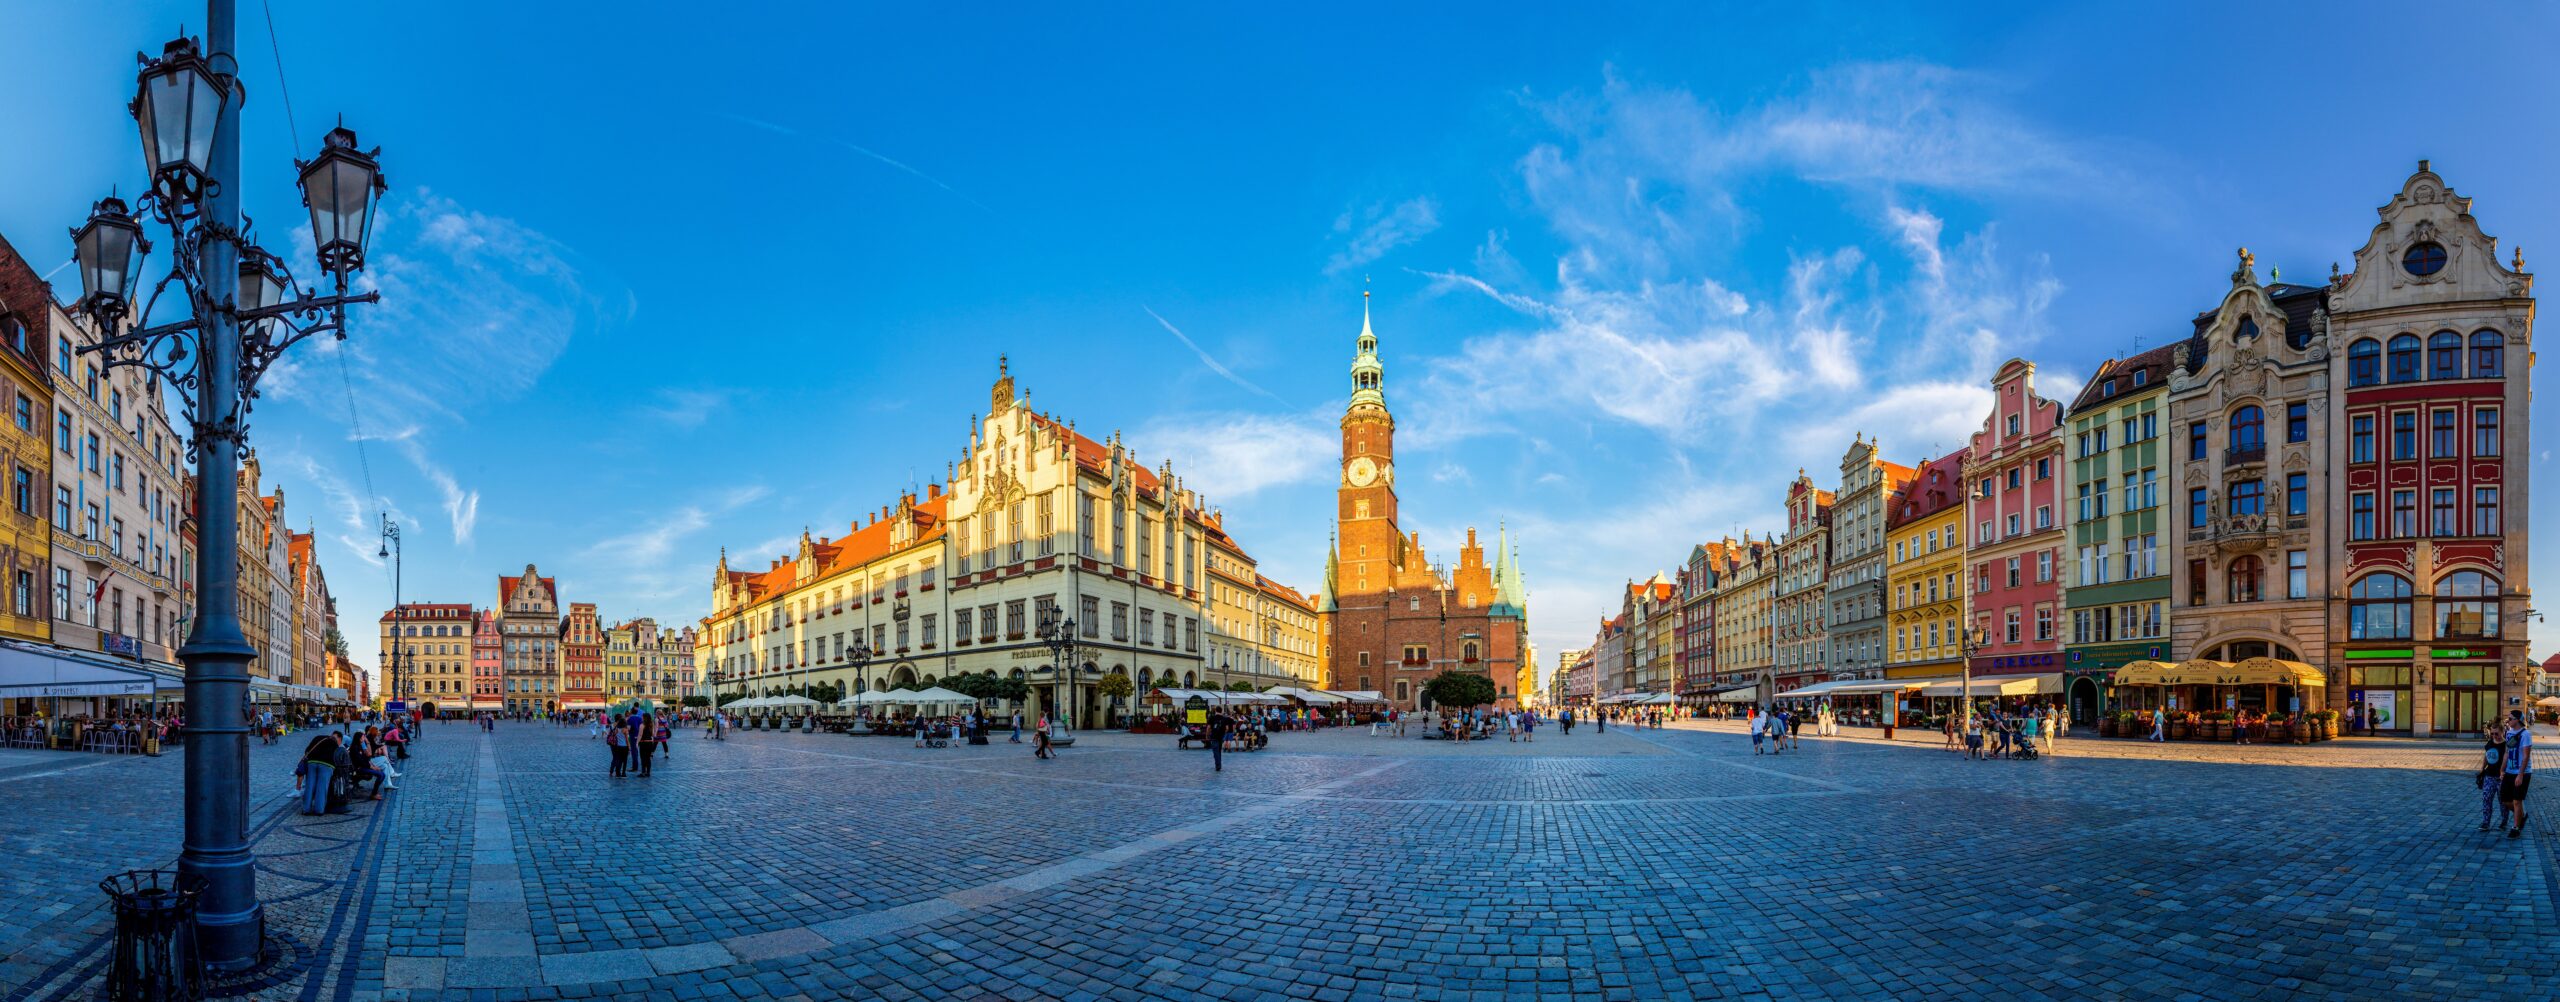 Architekturfreunde und Geschichtsinteressierte können in Wroclaw auf Entdeckungstour gehen.